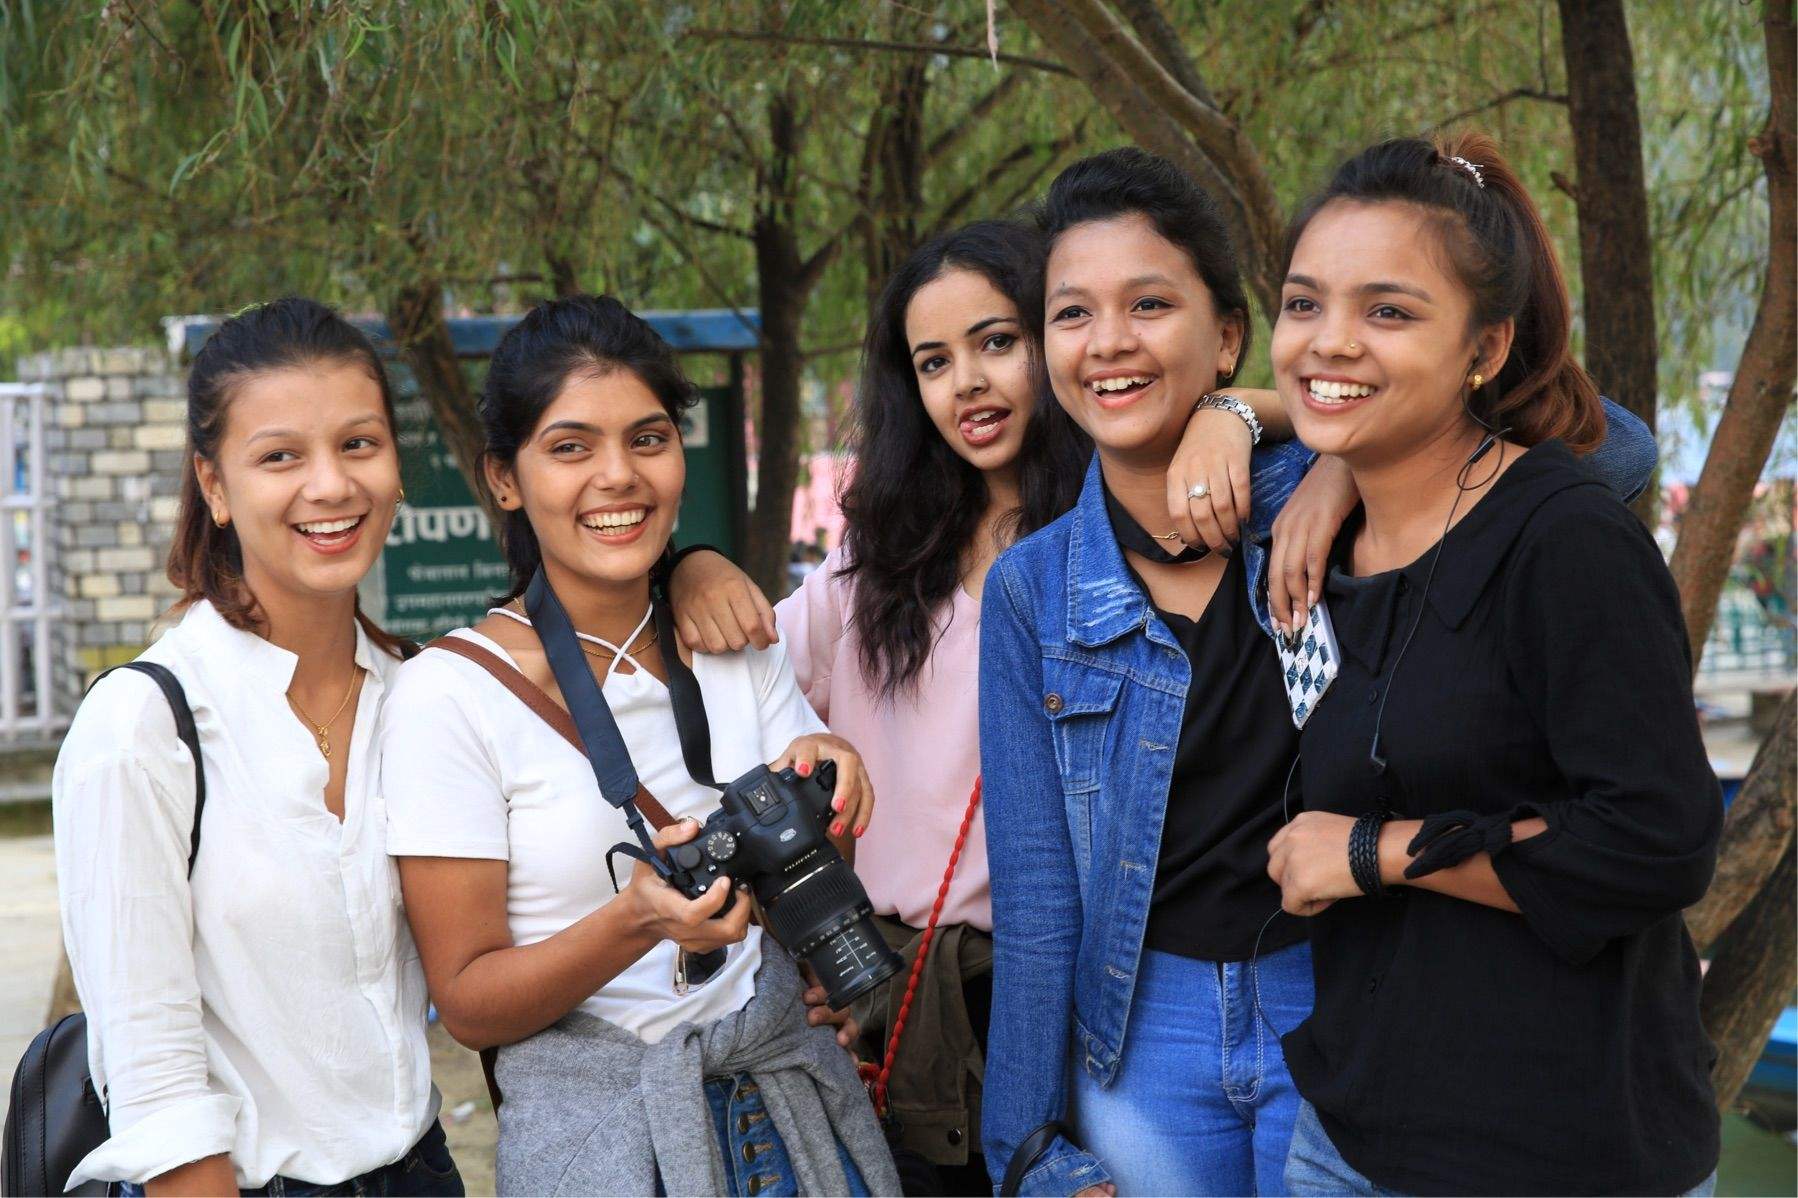 ：尼泊尔女孩组团来中国相亲的背后暴露了问题